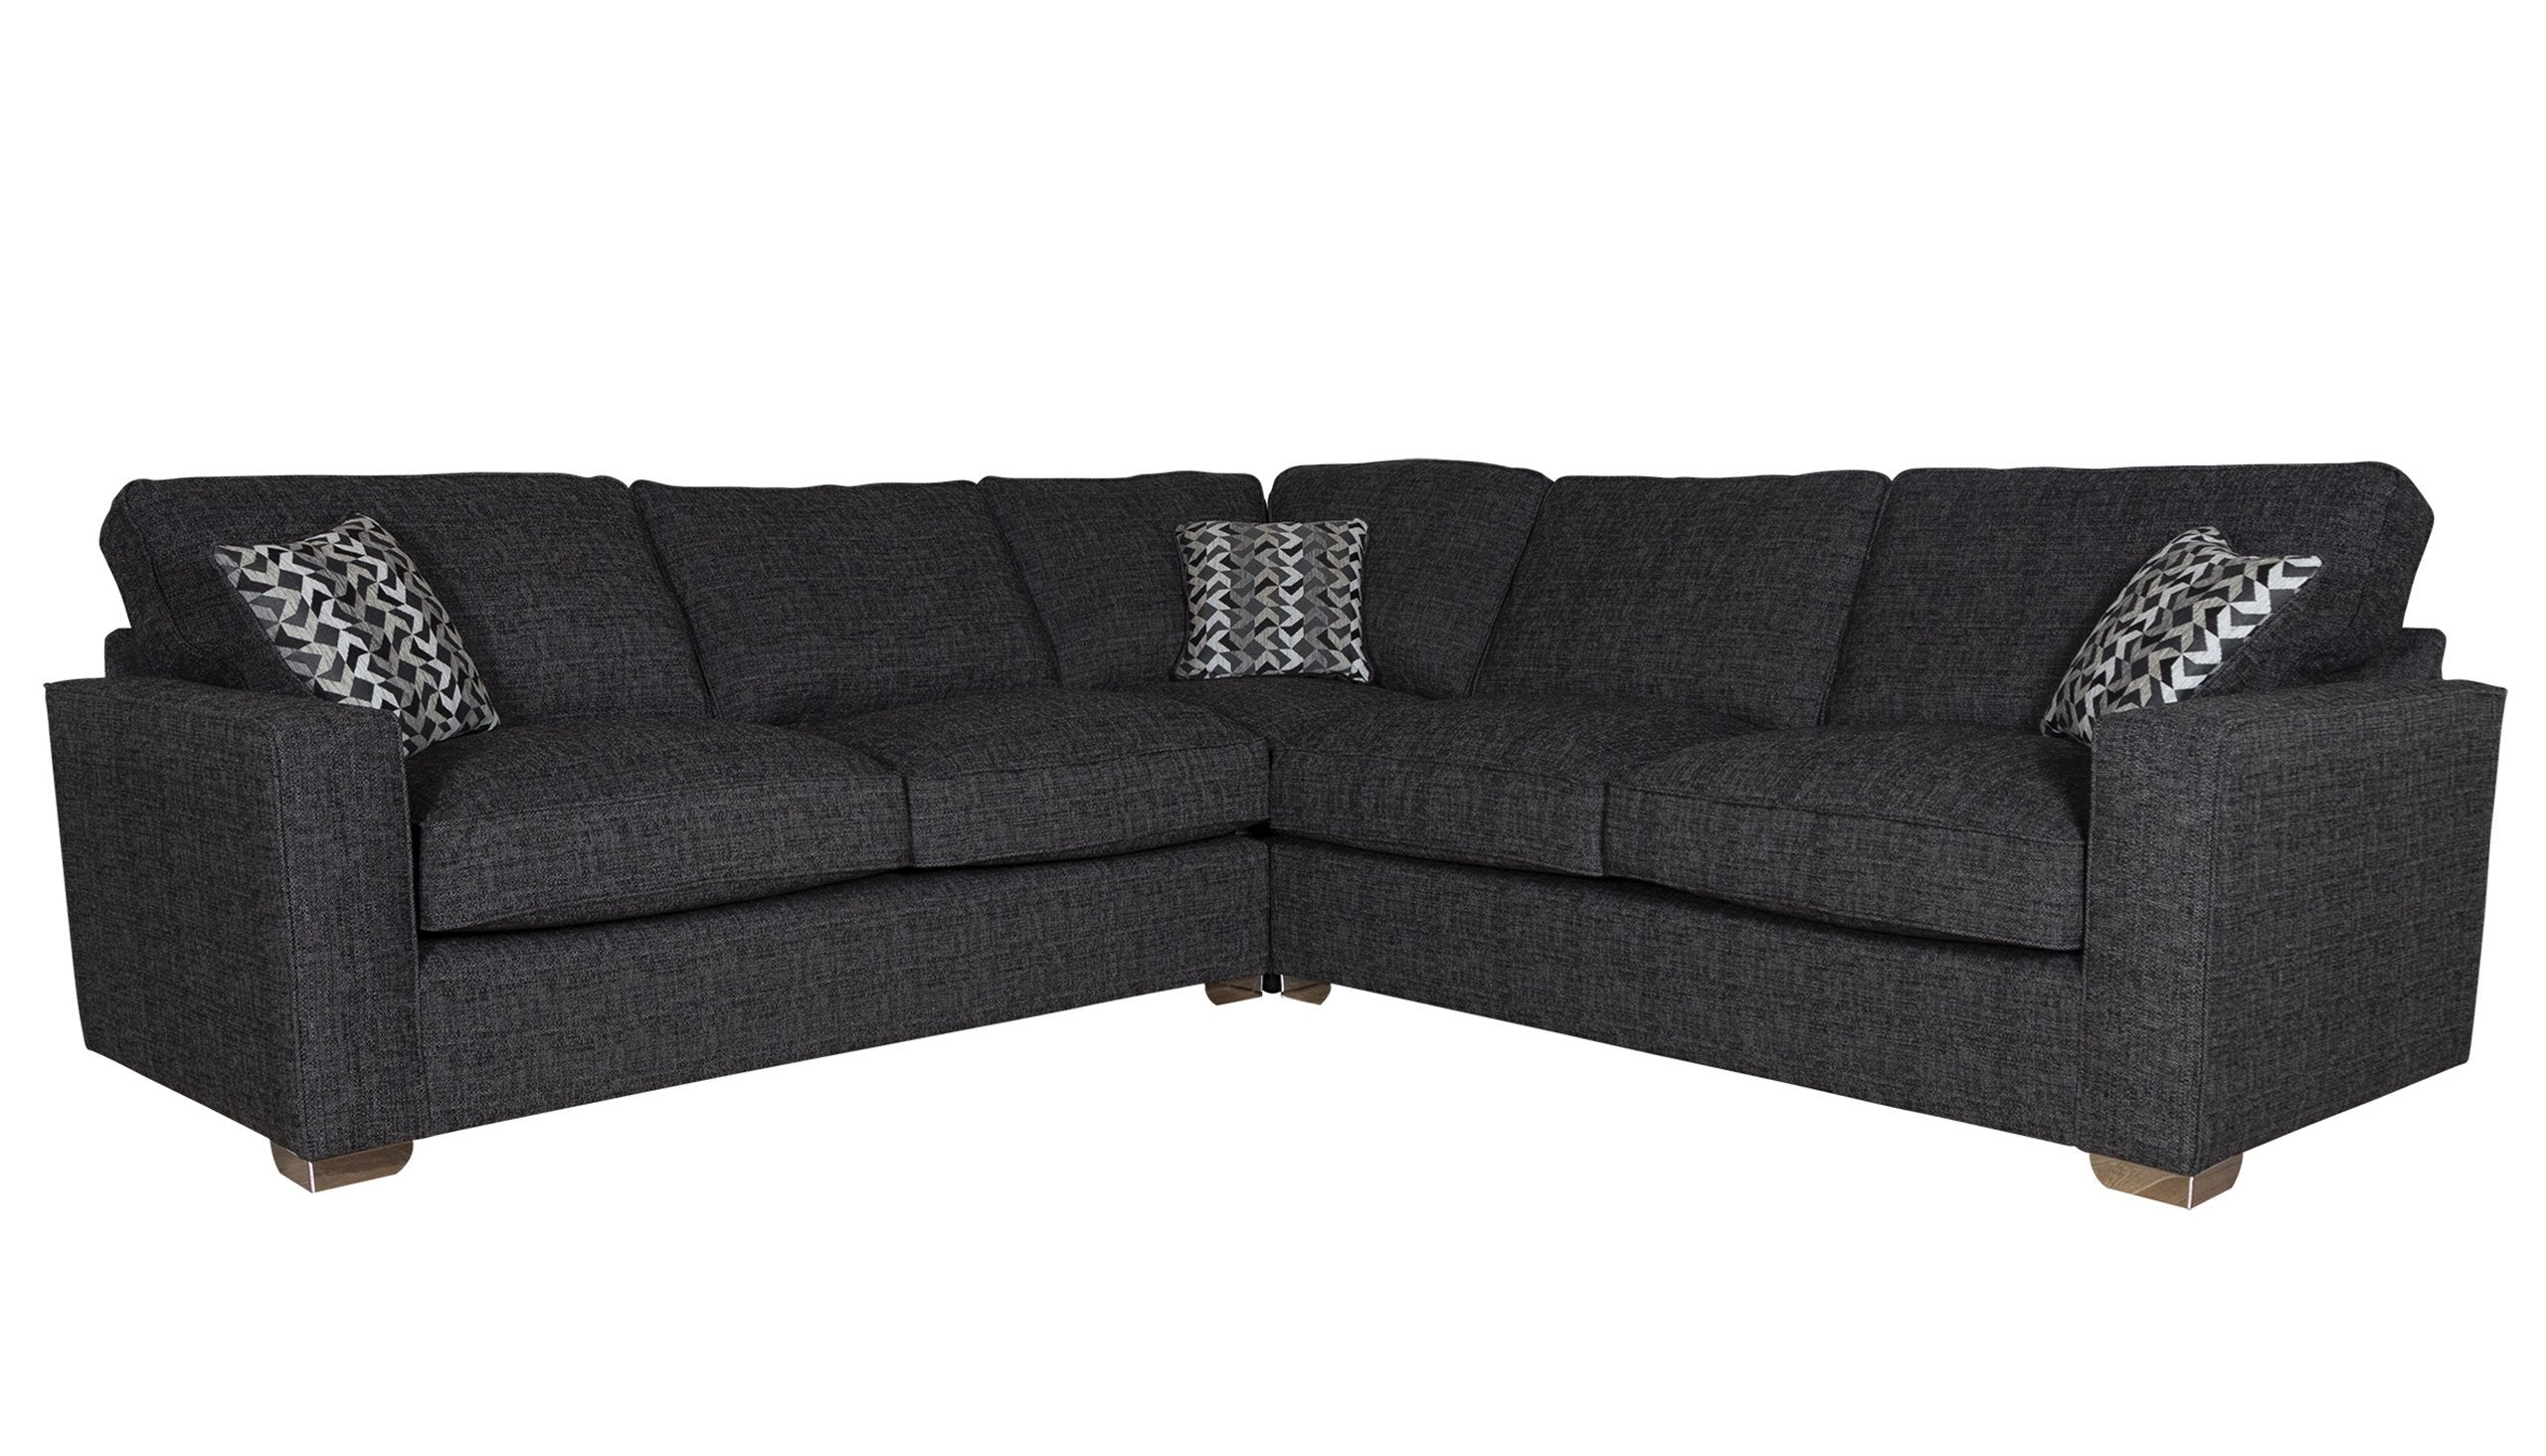 Celeste Large Corner Standard Back Sofa with Sofa Bed